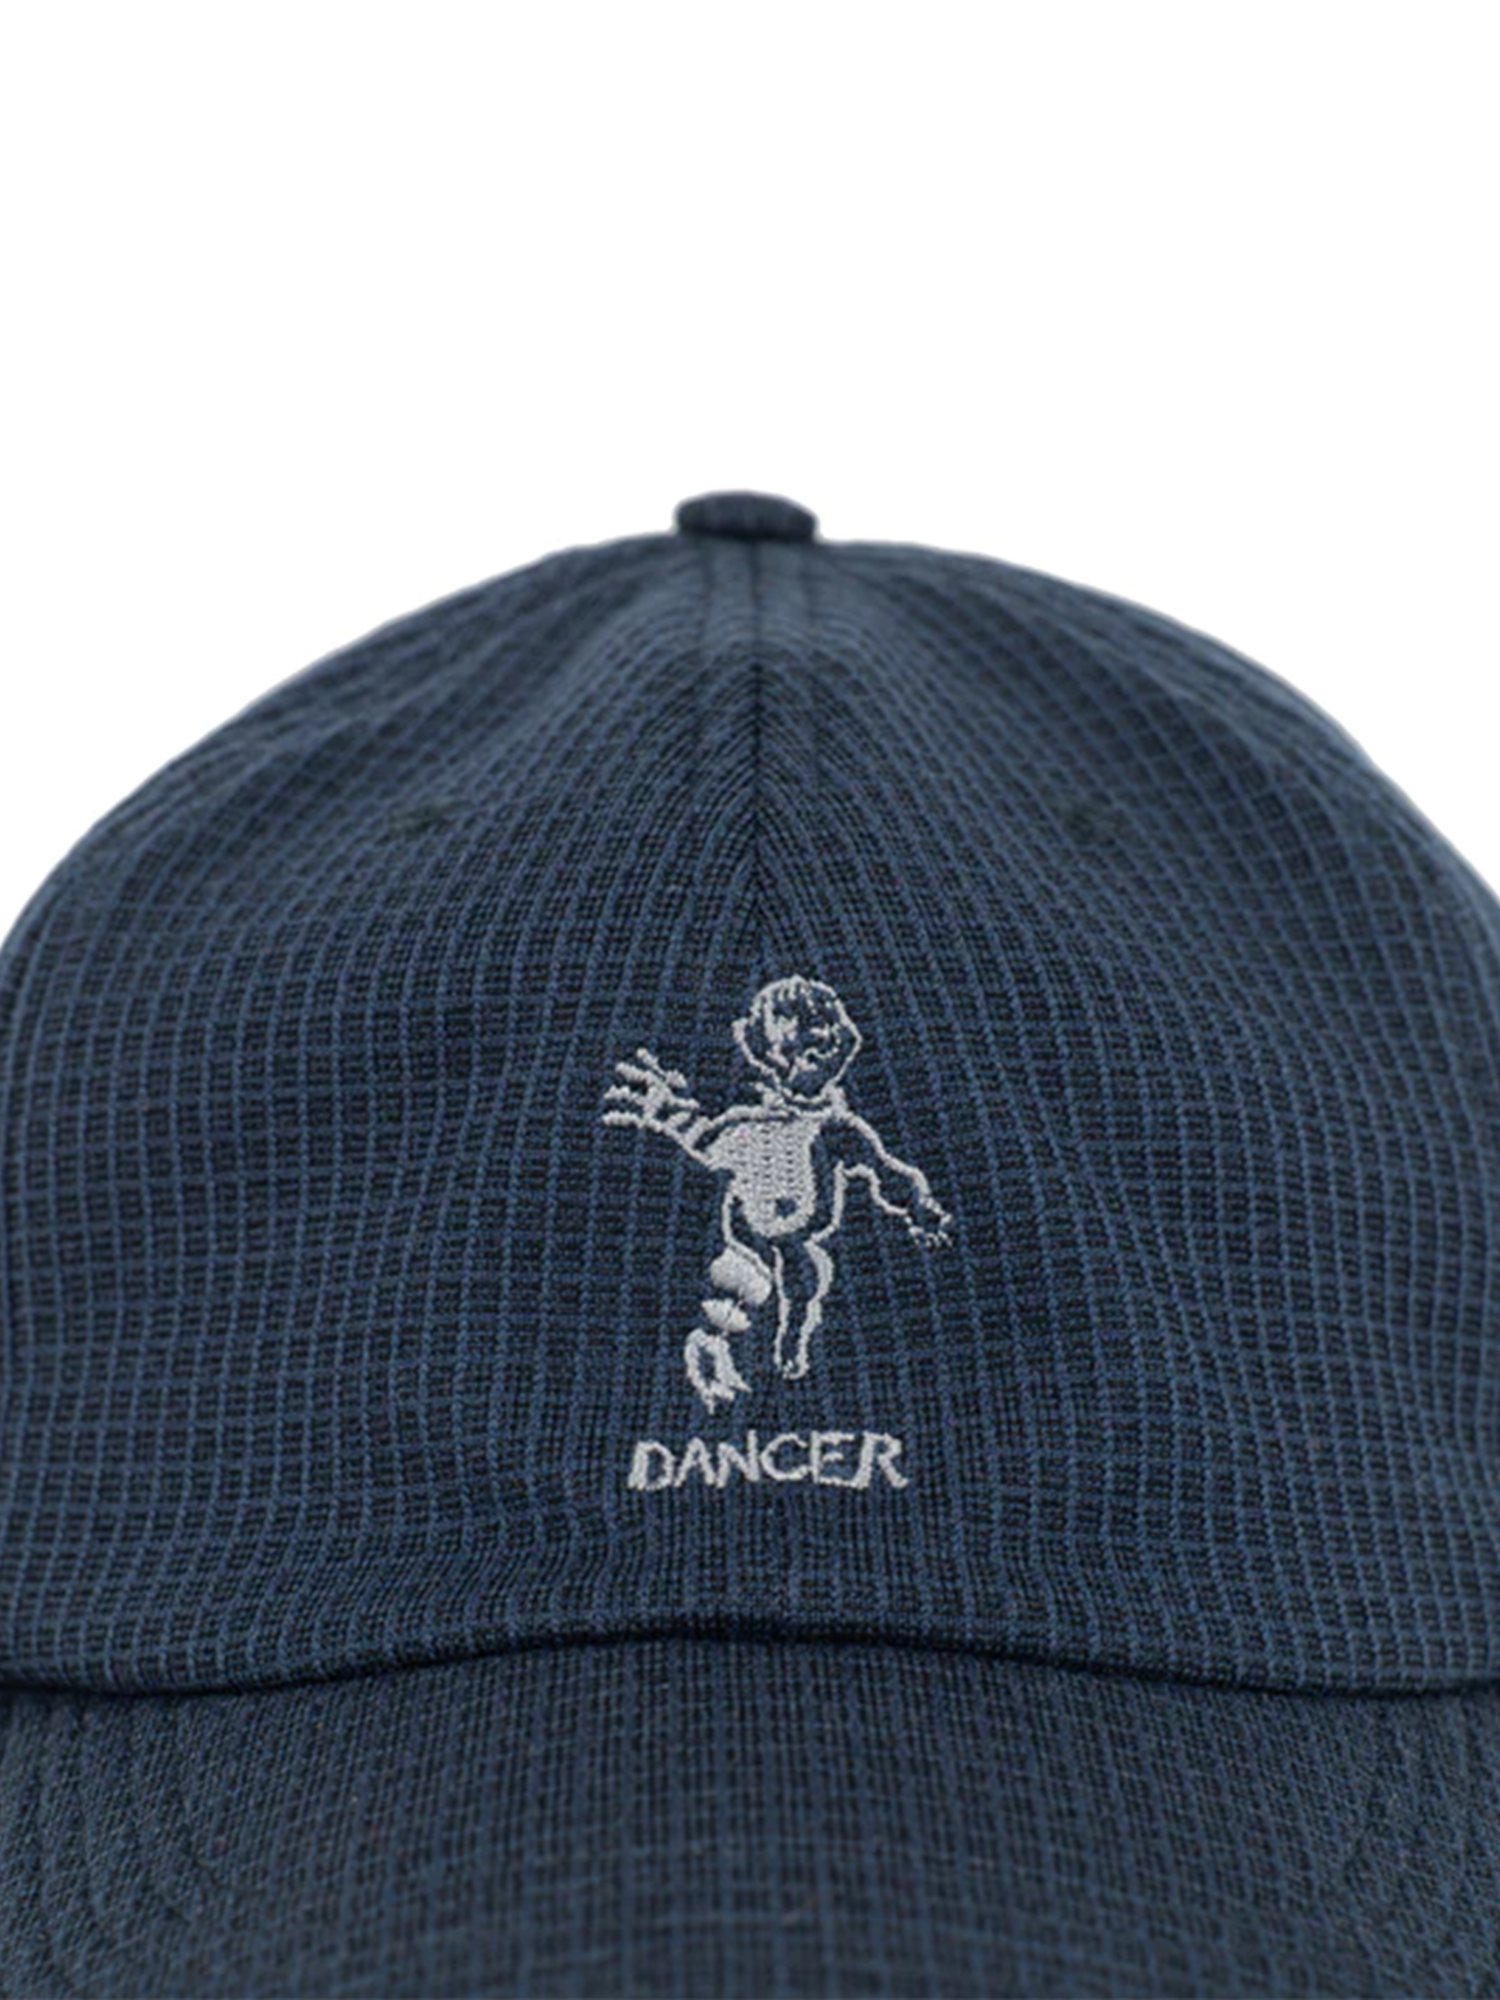 Dancer - Hat - OG Logo - Fleece Cap - Navy